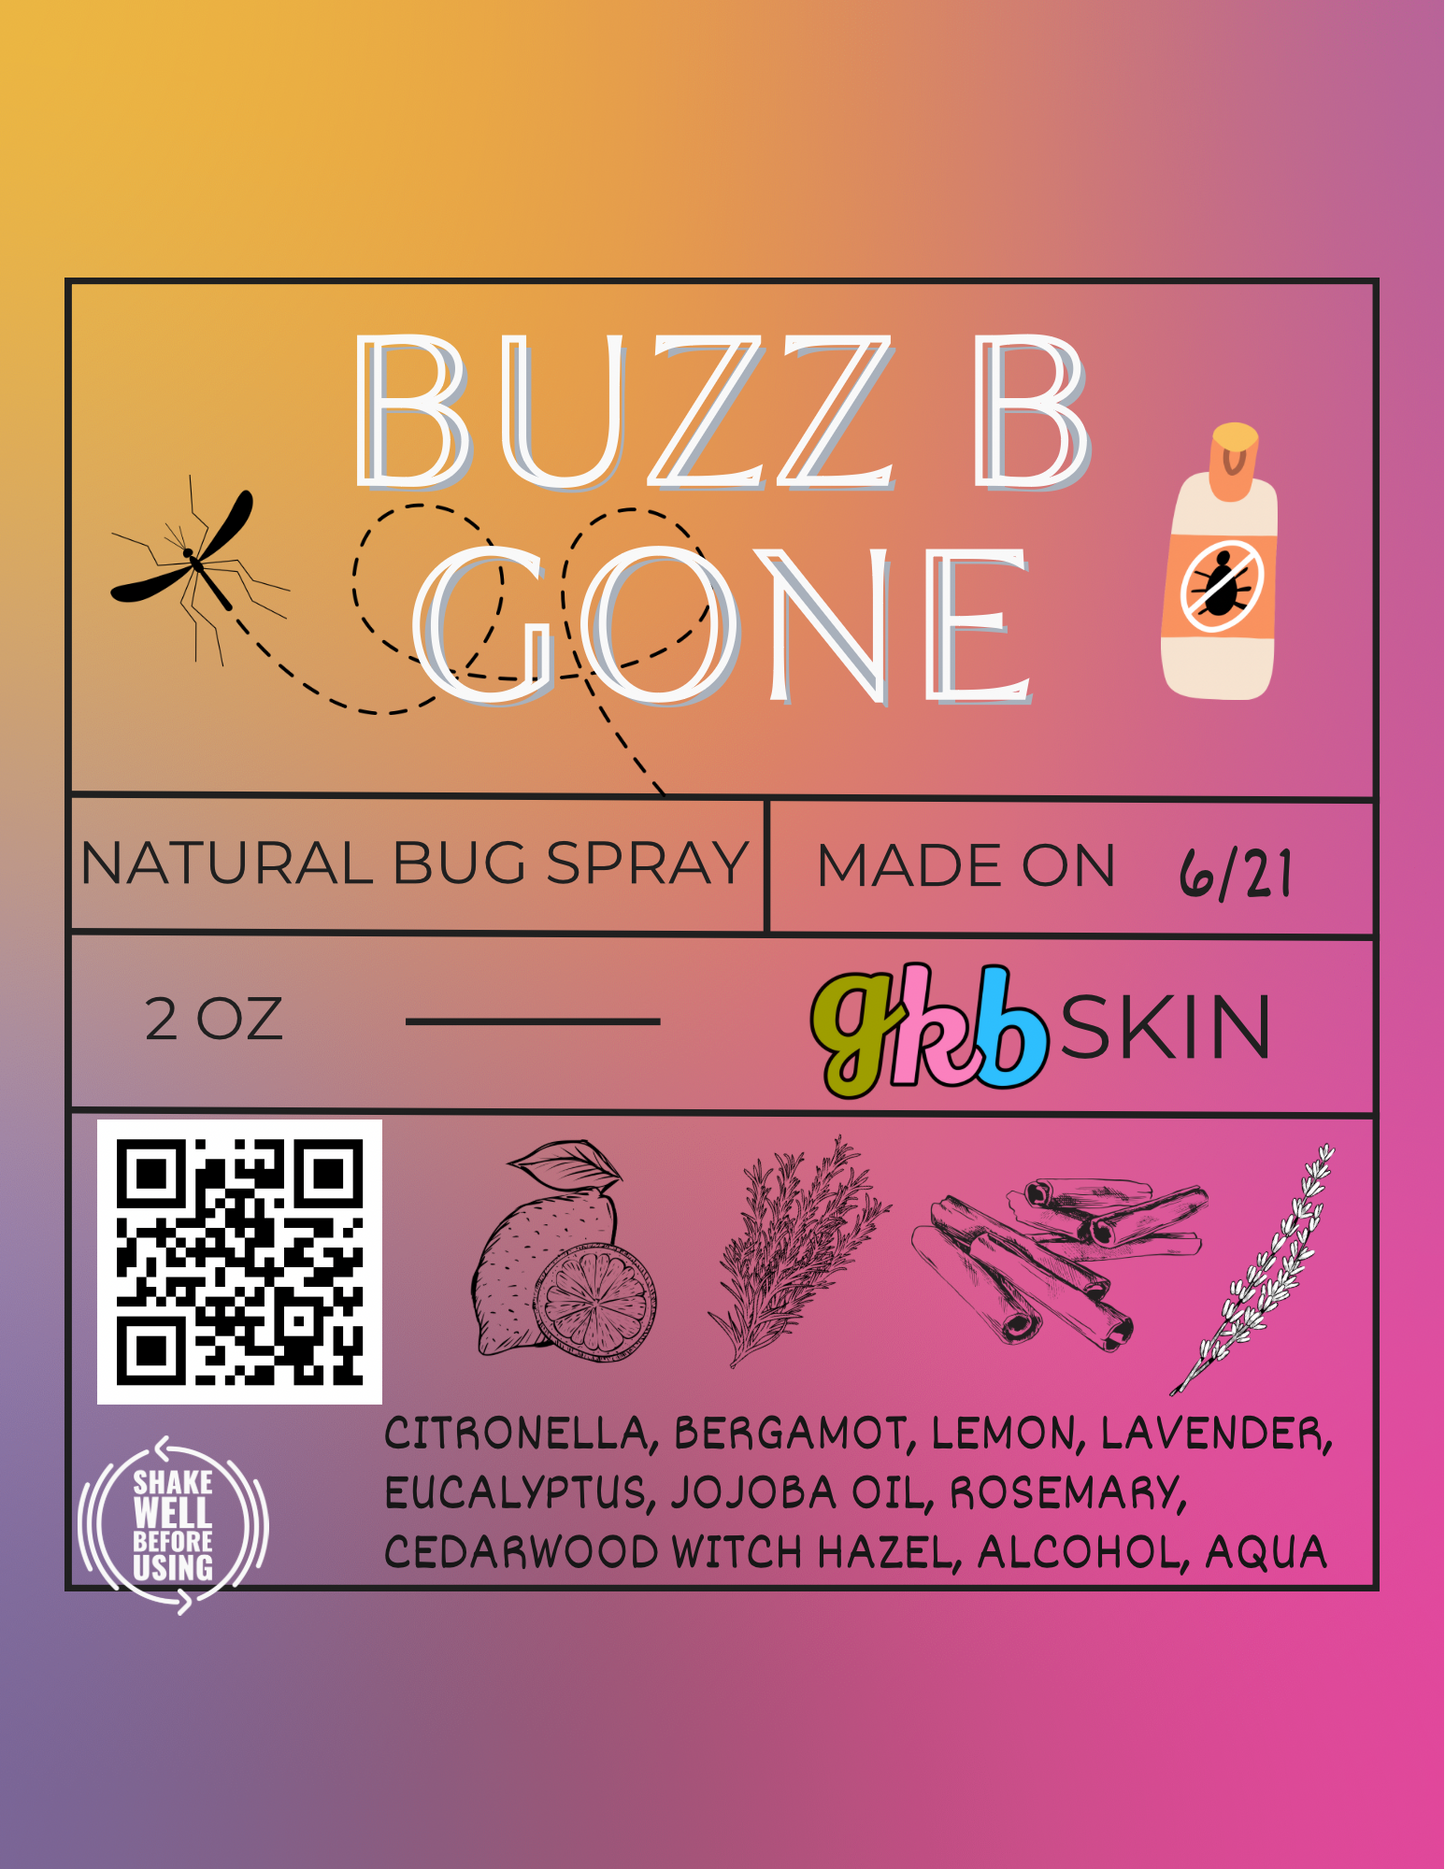 Buzz B Gone Bug Spray